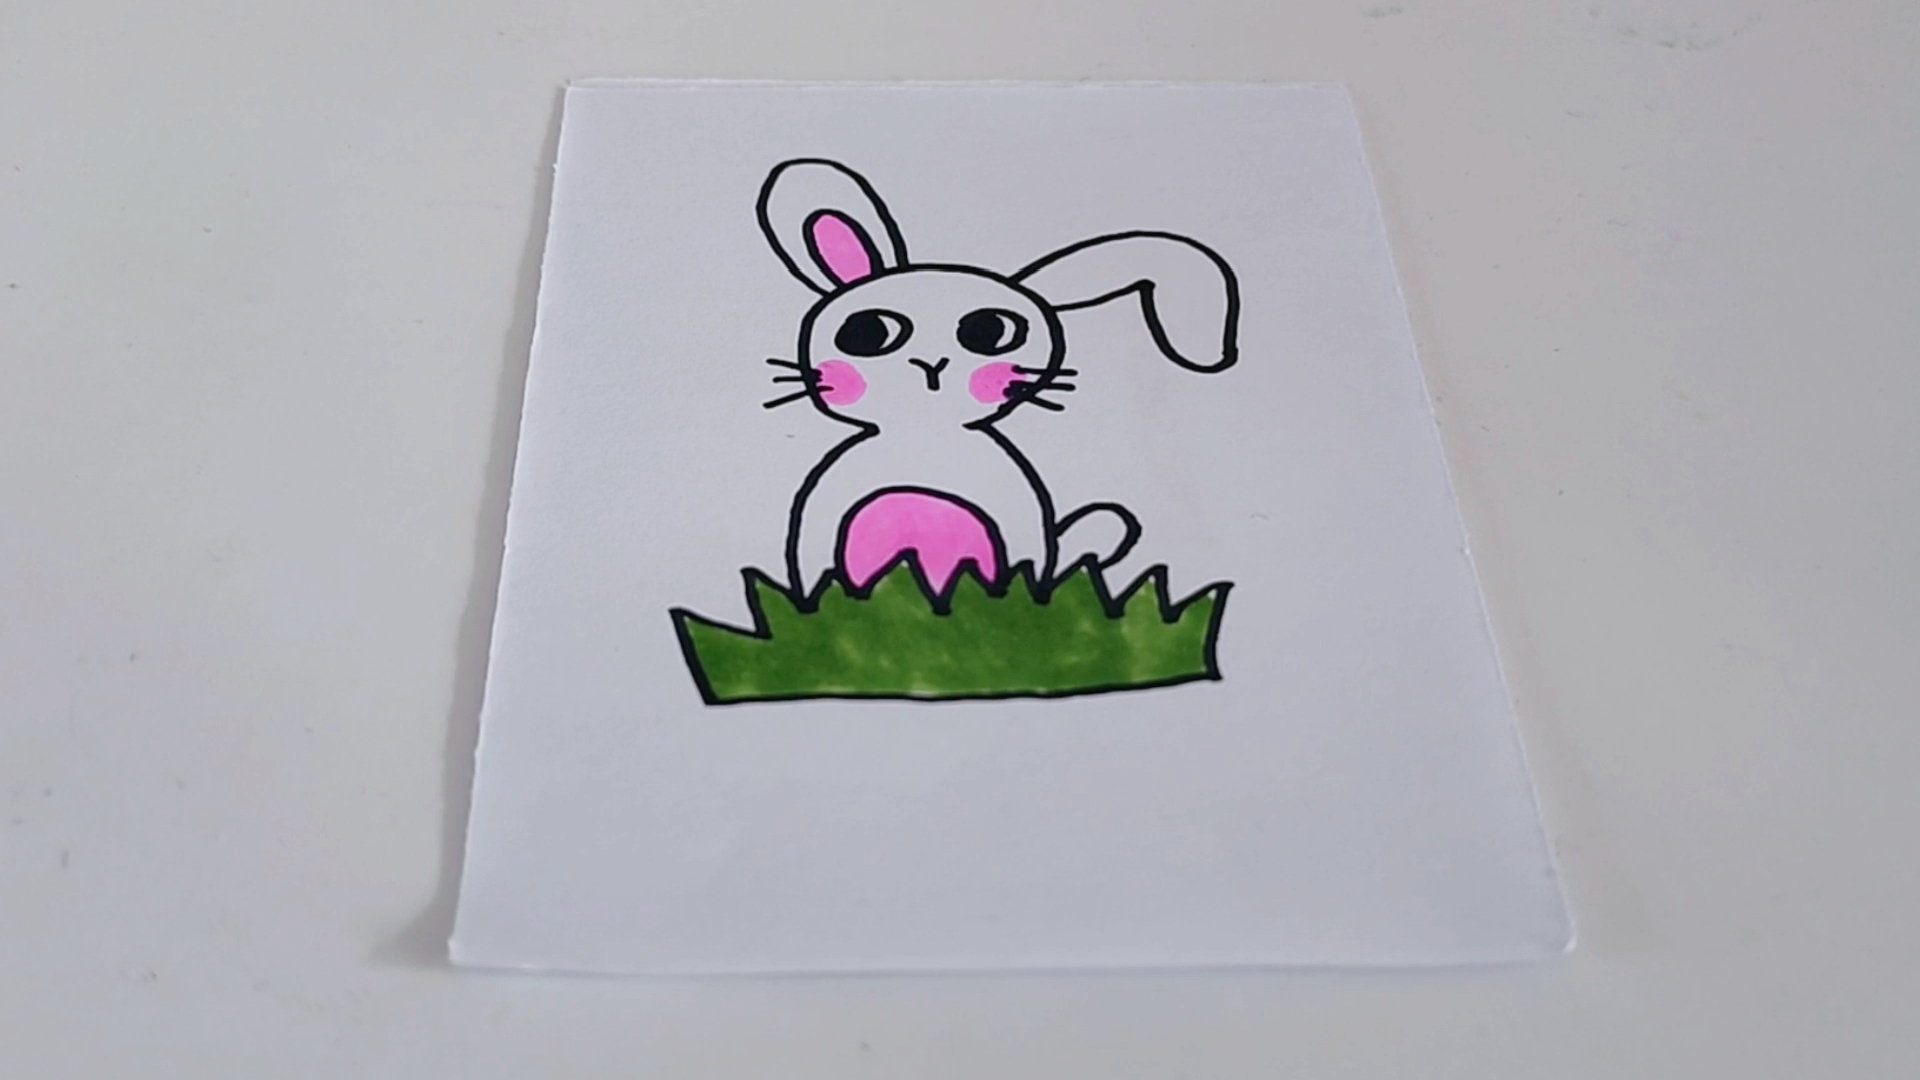 草地上的小兔子简笔画图片